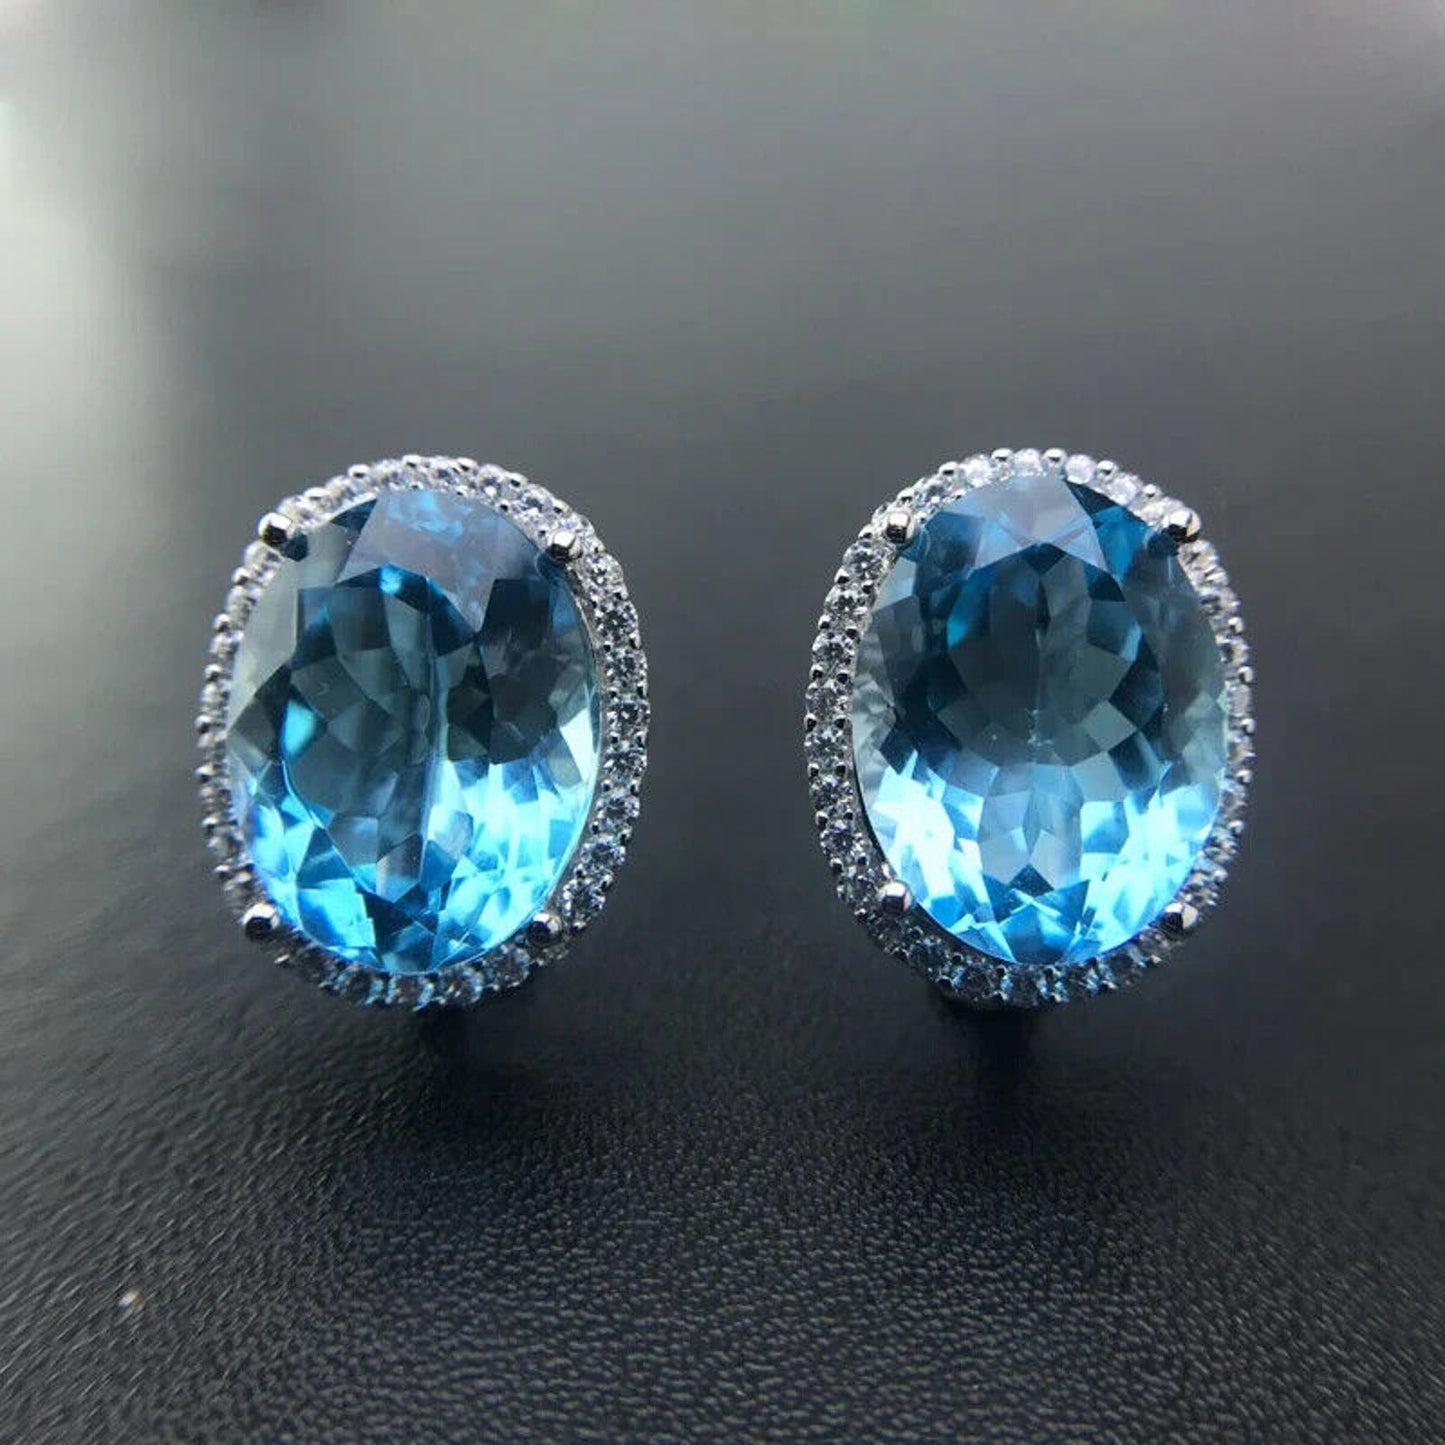 Swiss Blue Topaz Oval Cut Earrings 12x16mm, 23ct Blue Topaz 925 Sterling Silver